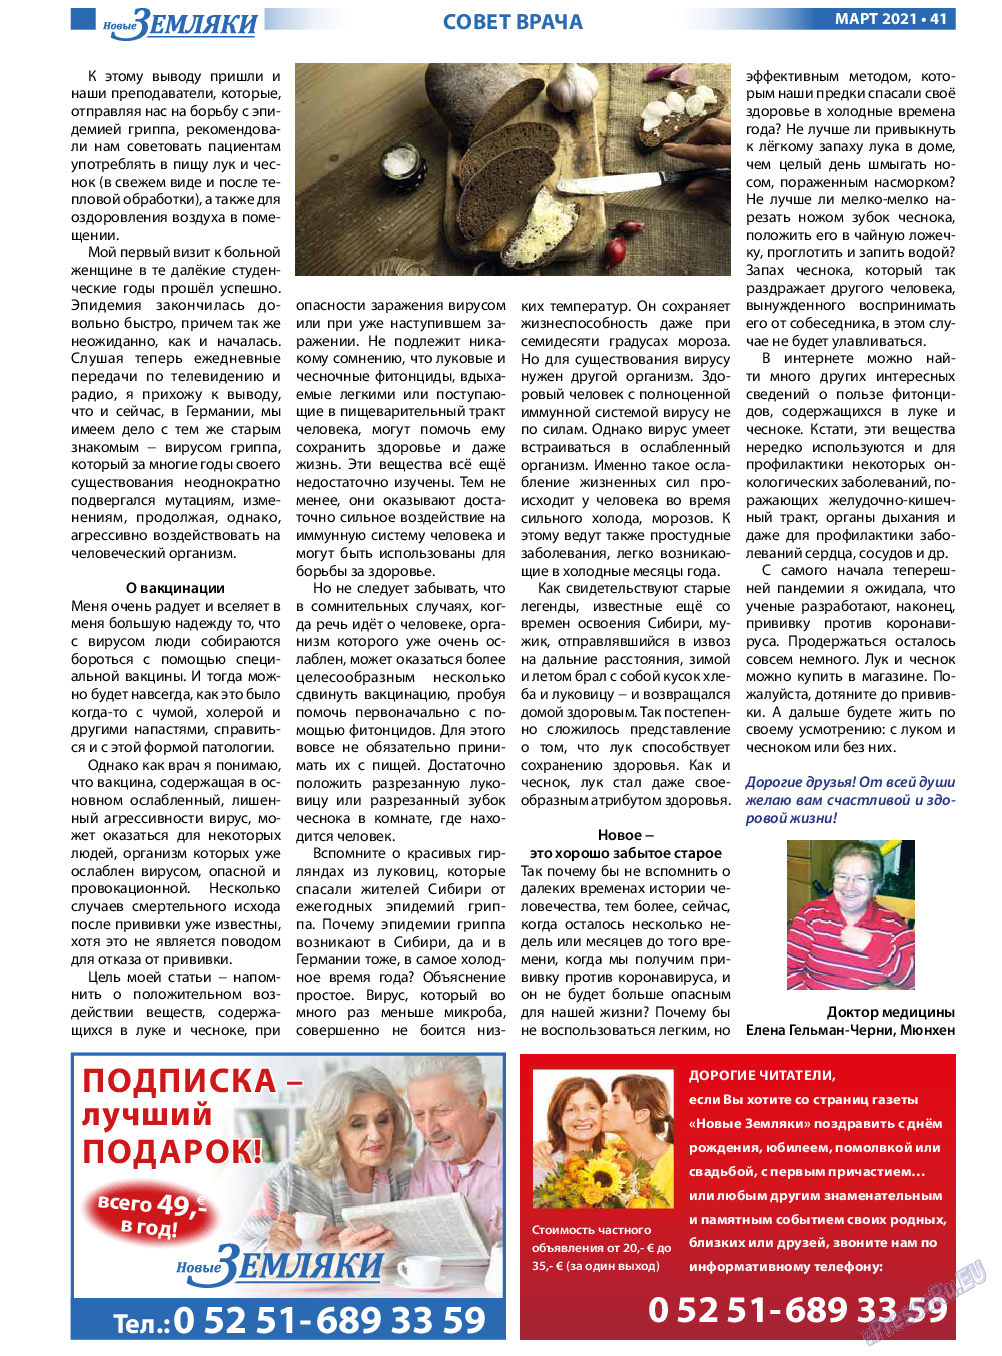 Новые Земляки, газета. 2021 №3 стр.41